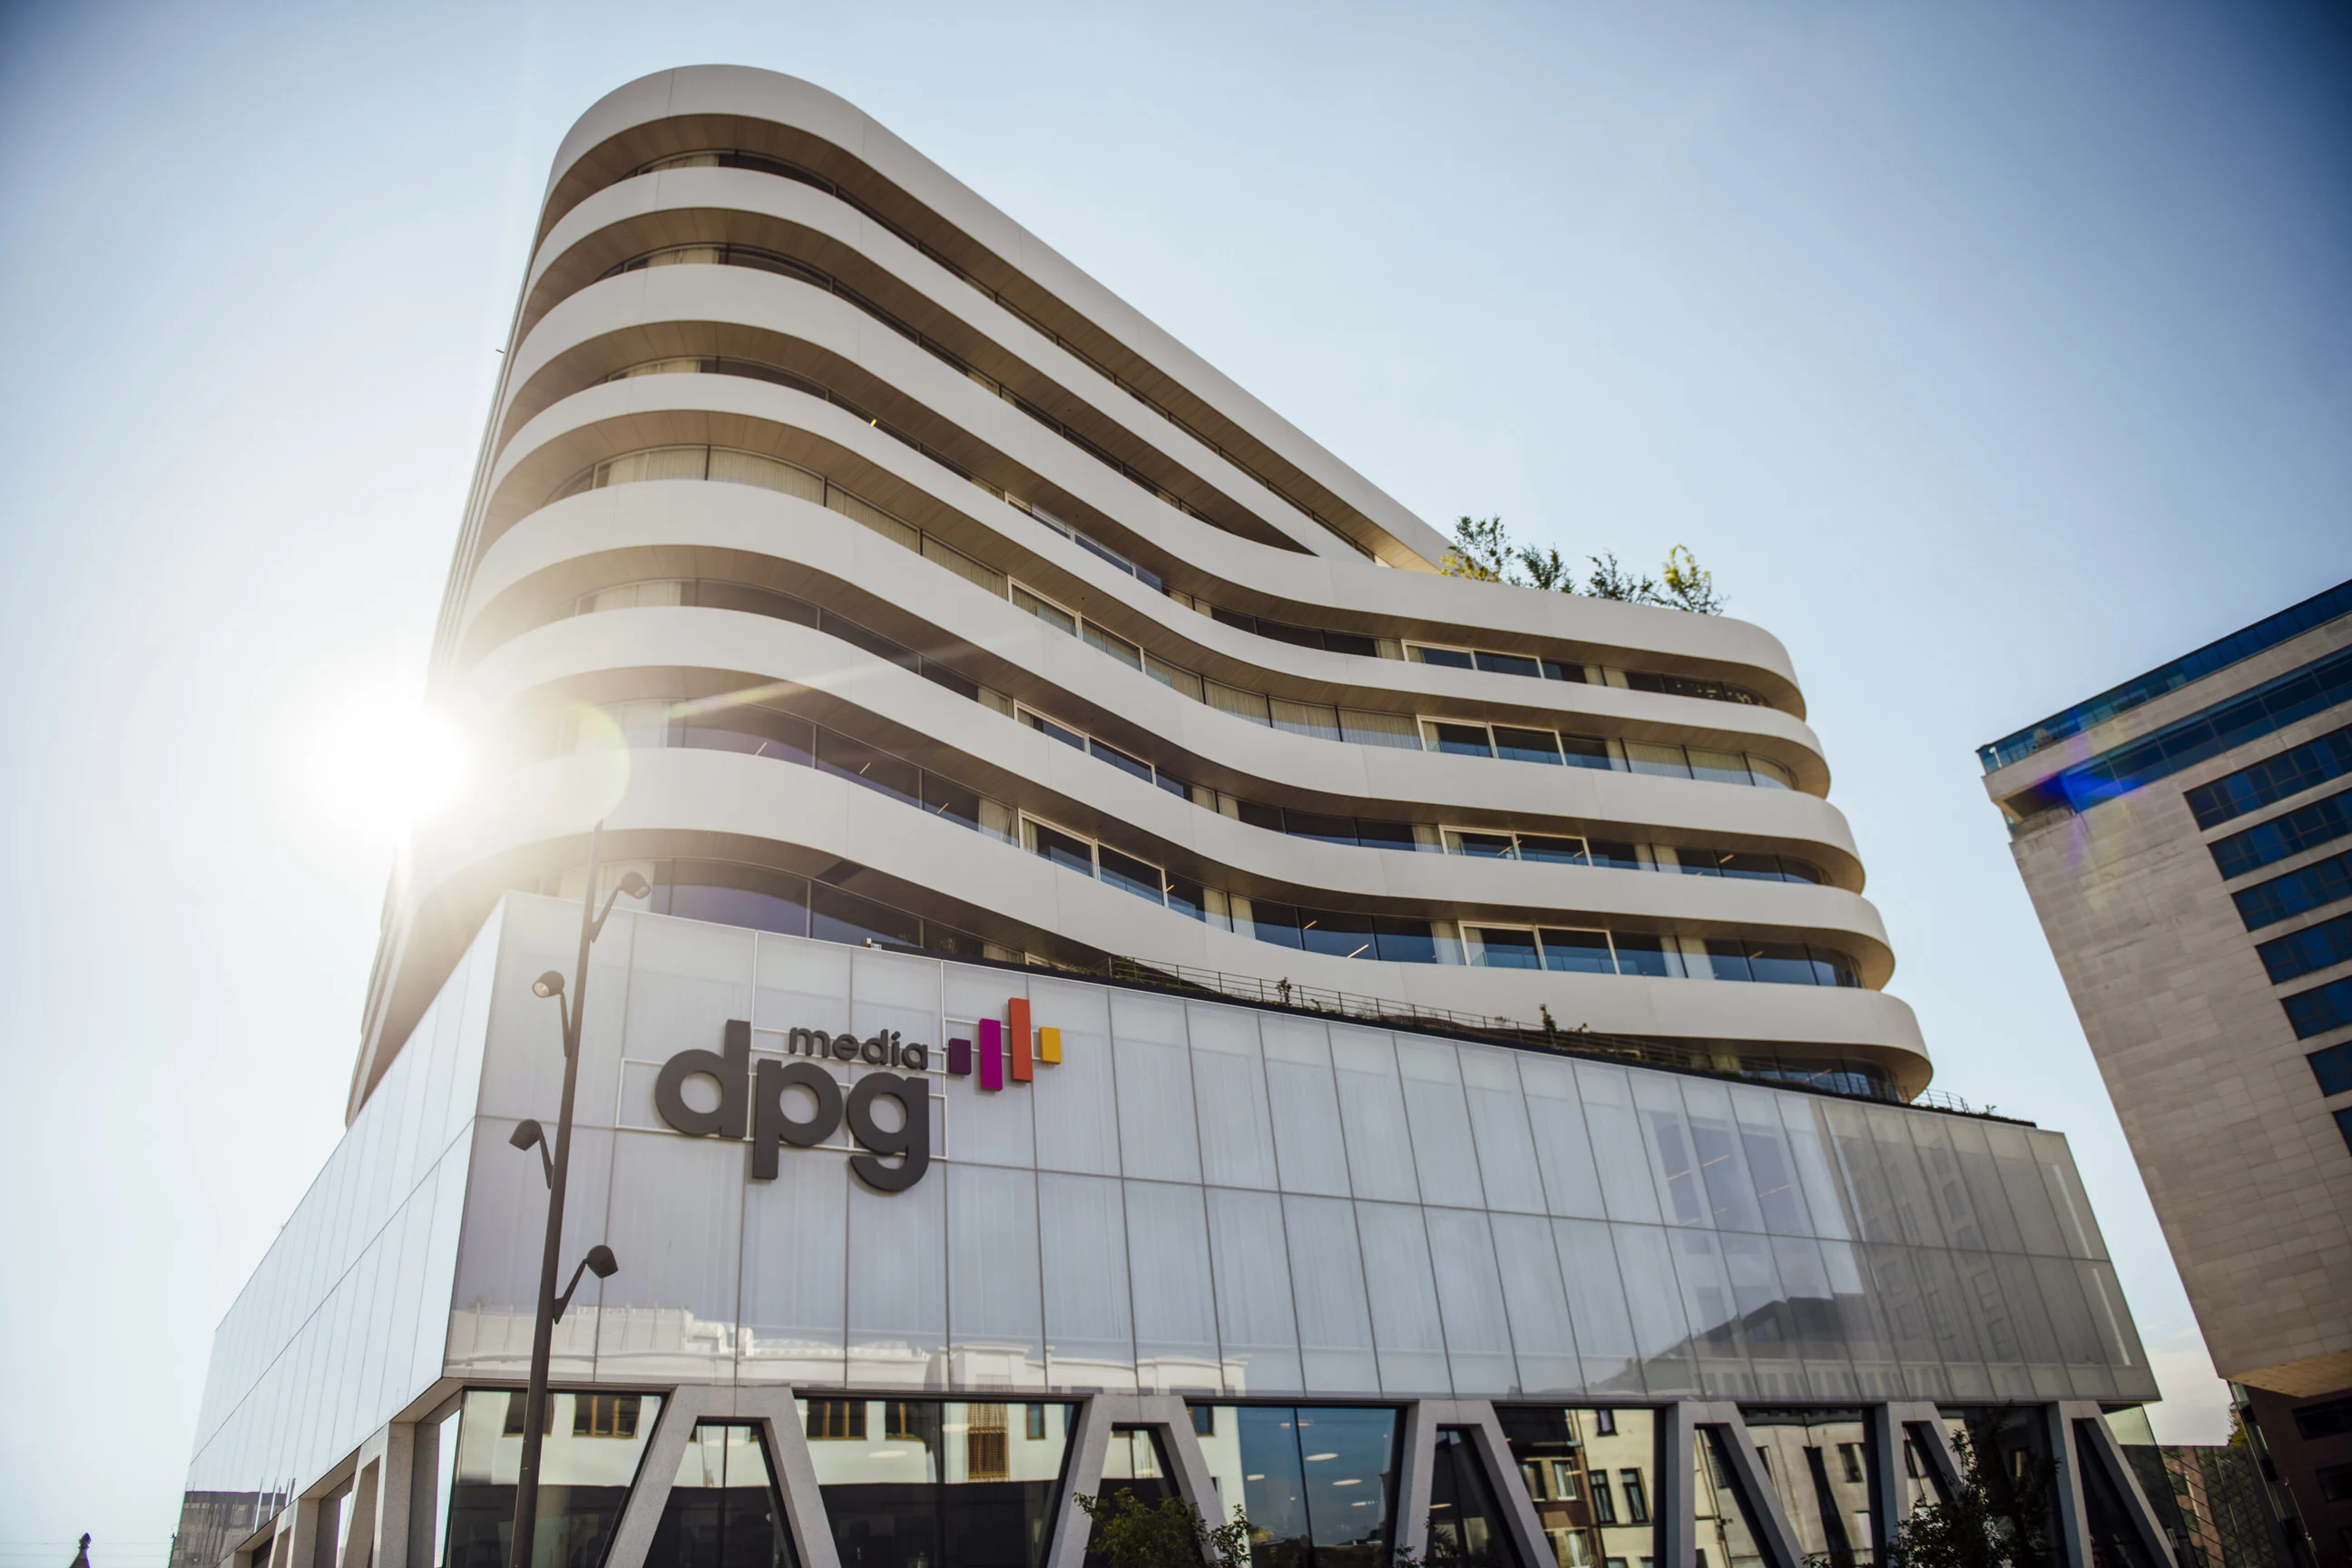 DPG Media Anvers